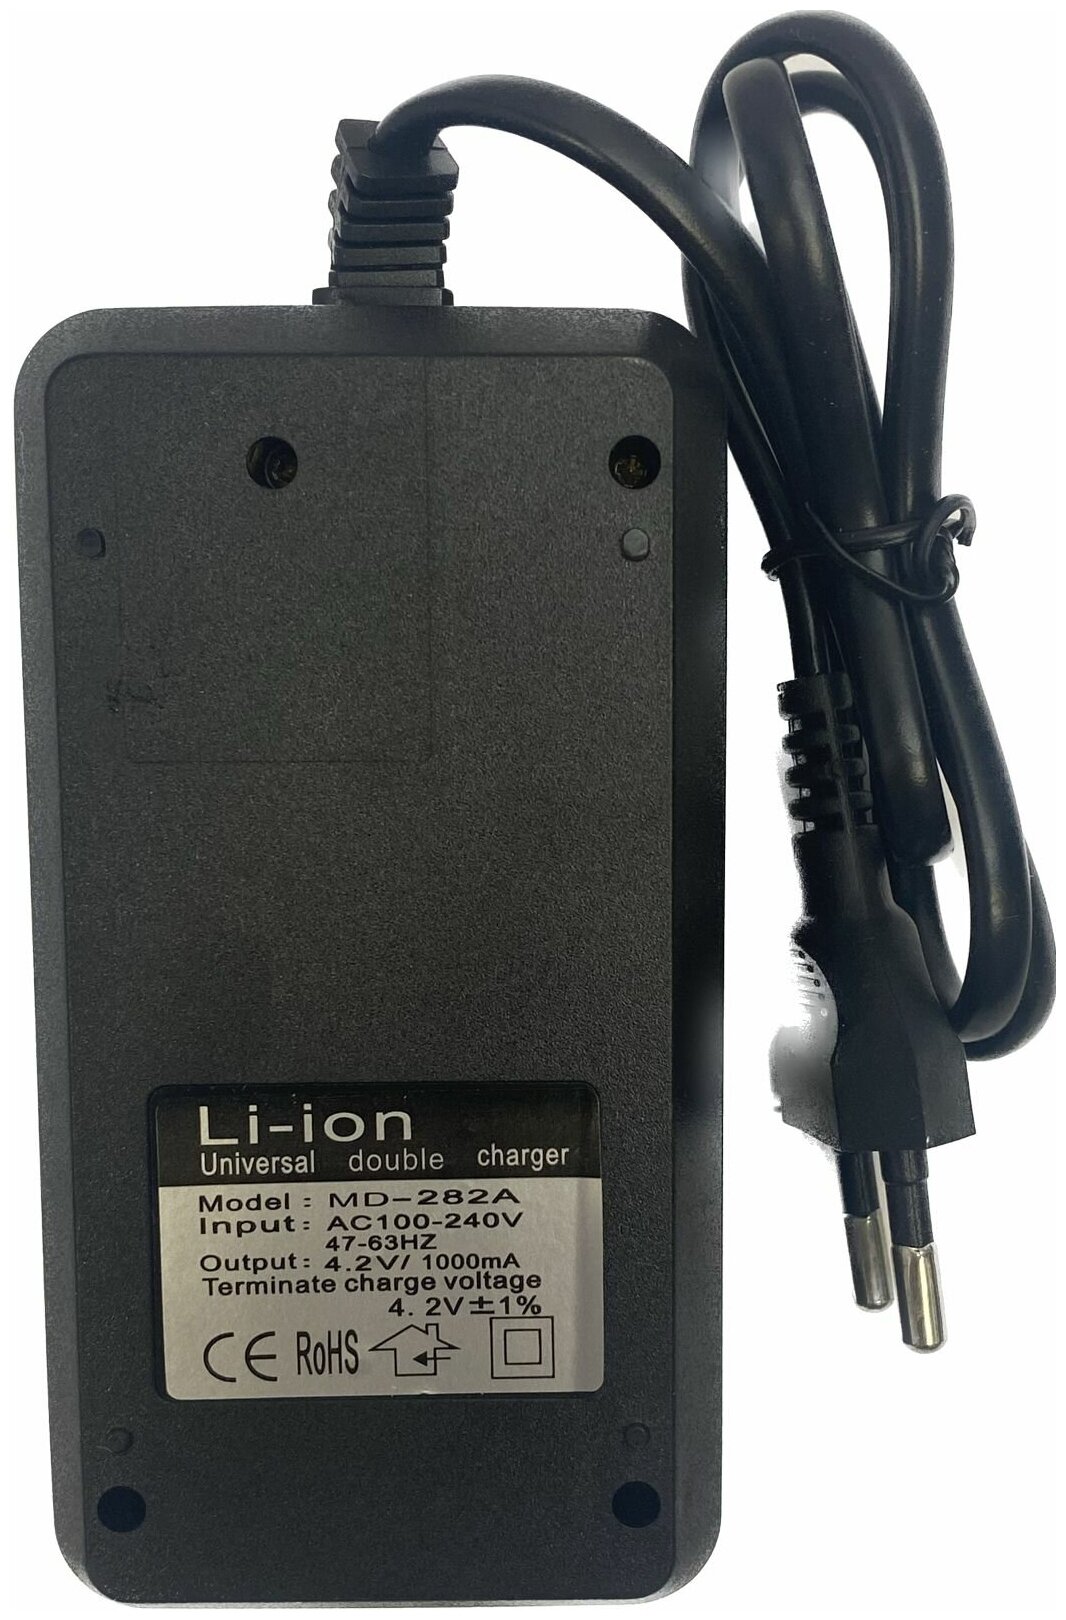 Универсальное зарядное устройство для Li-ion аккумуляторов 18650 16340 26650 14500 2 слота с индикатором